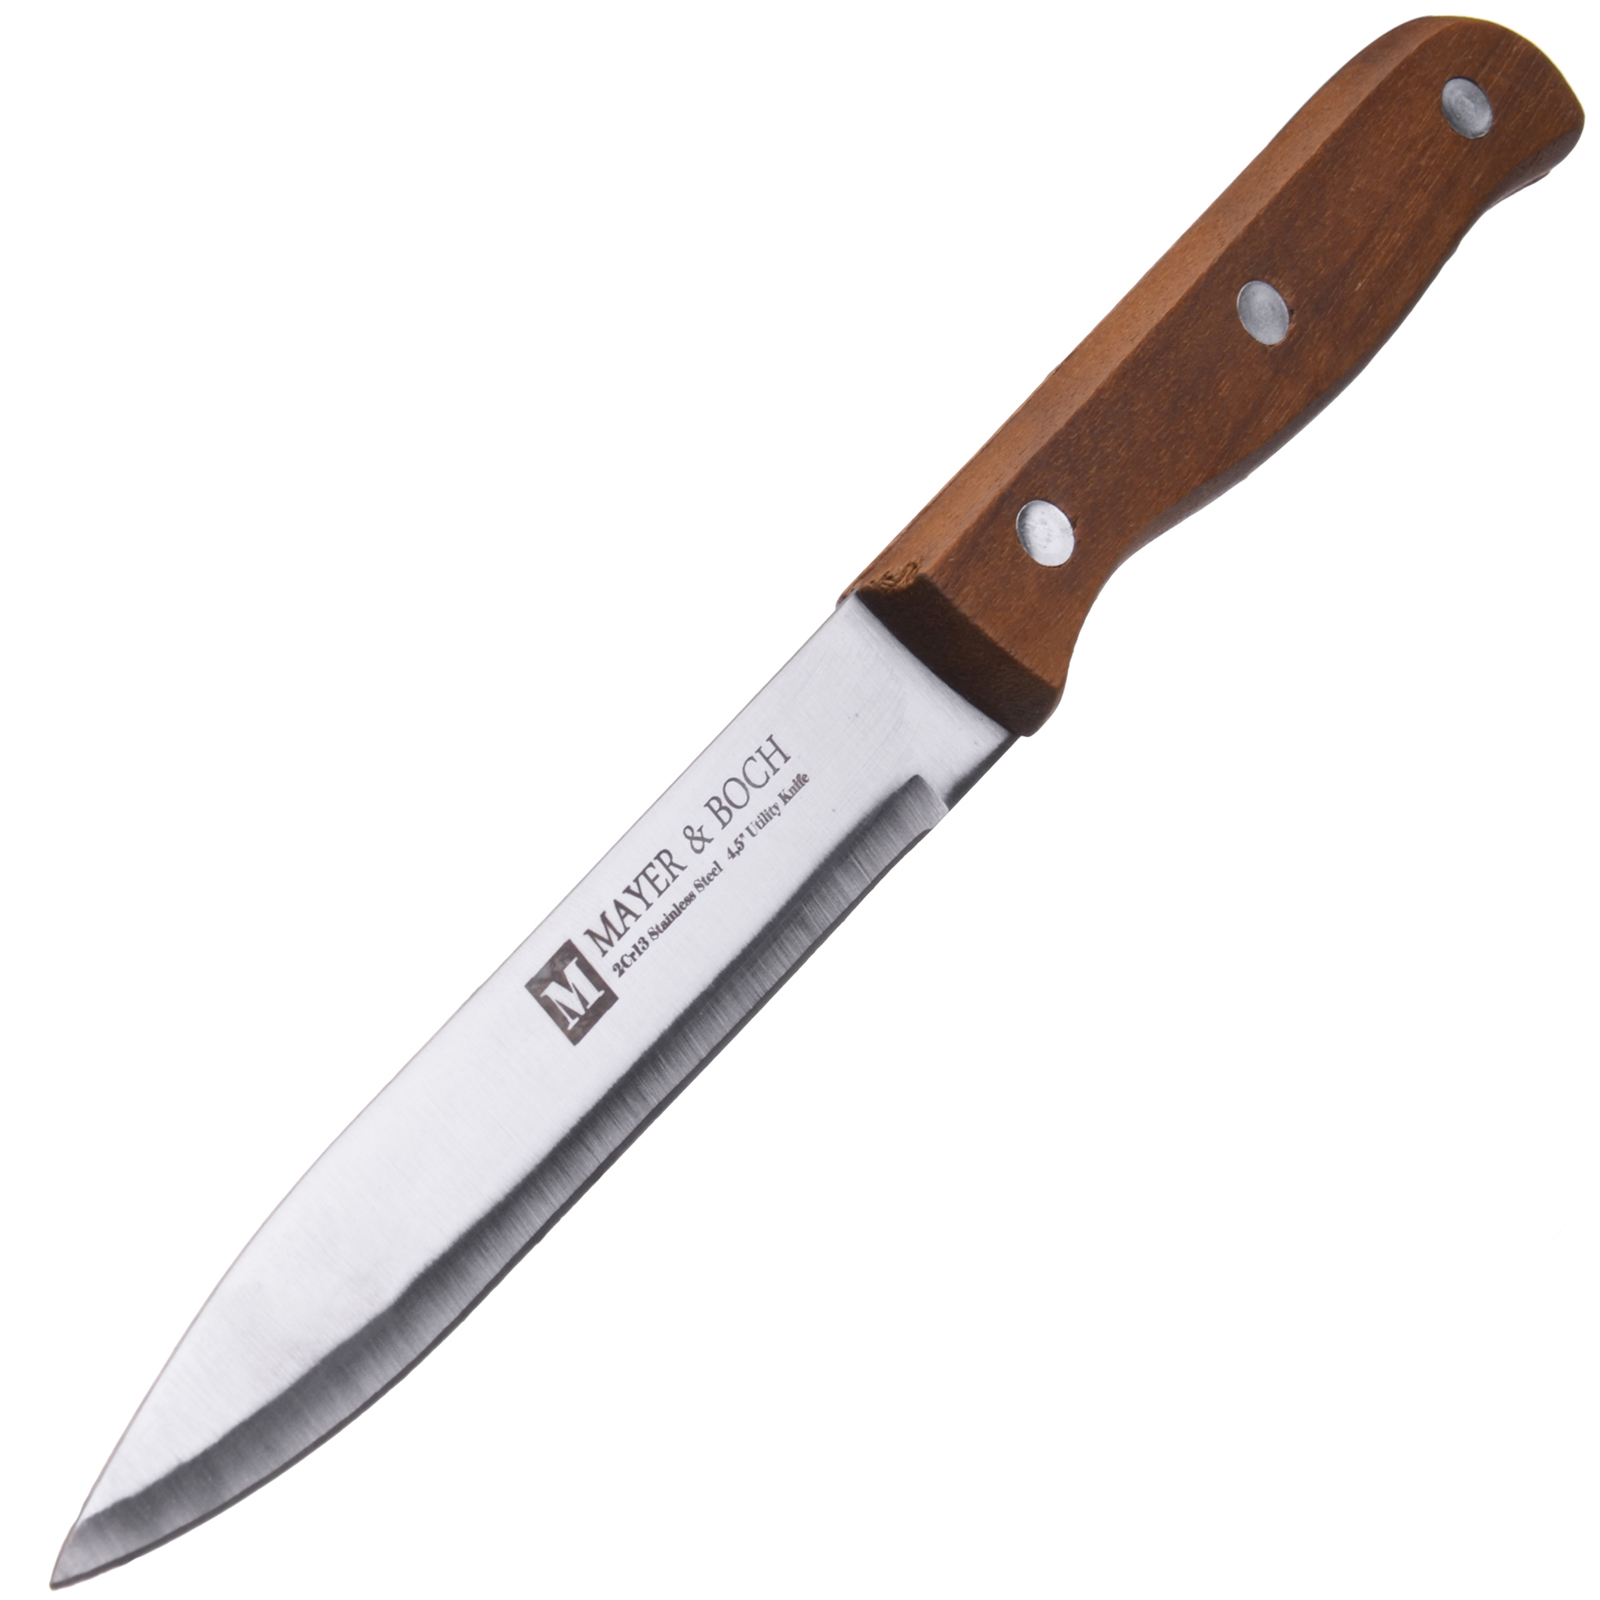 фото Нож универсальный Mayer & Boch Classic, цвет: коричневый, серебристый, длина лезвия 11,5 см